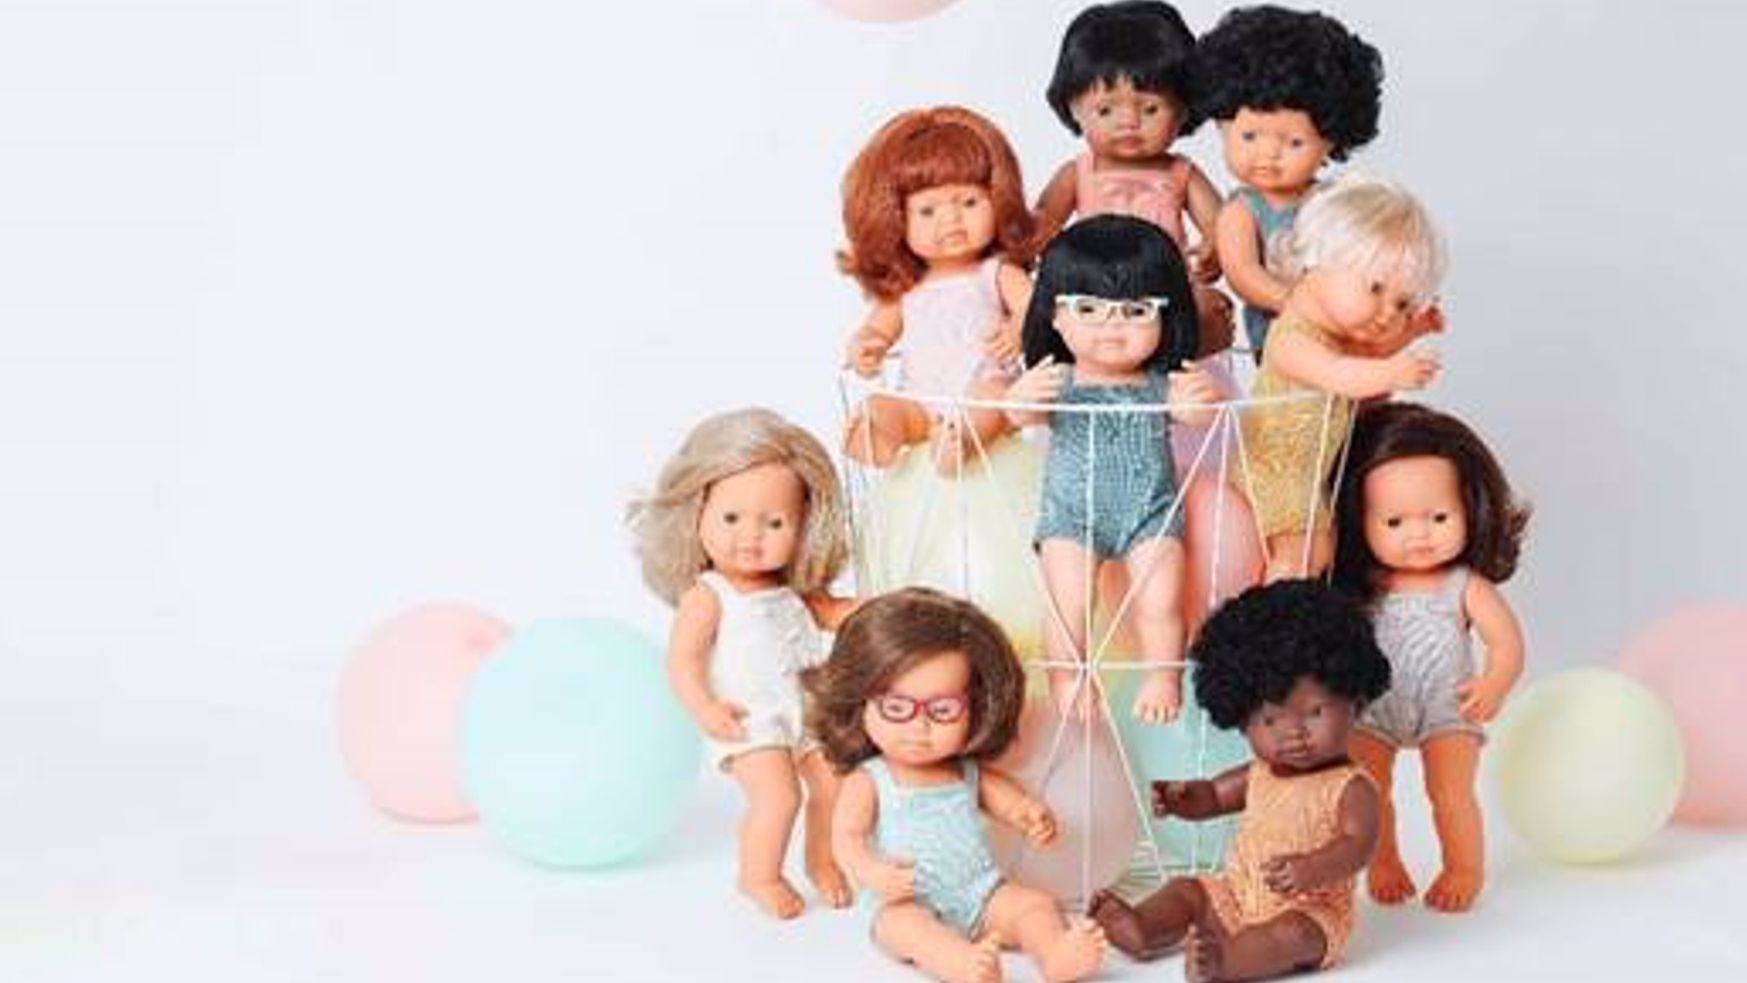 MEJORES JUGUETES NAVIDAD  Estos son los 12 mejores juguetes de 2023 para  Navidad, una lista liderada por la 'Barbie con síndrome de Down